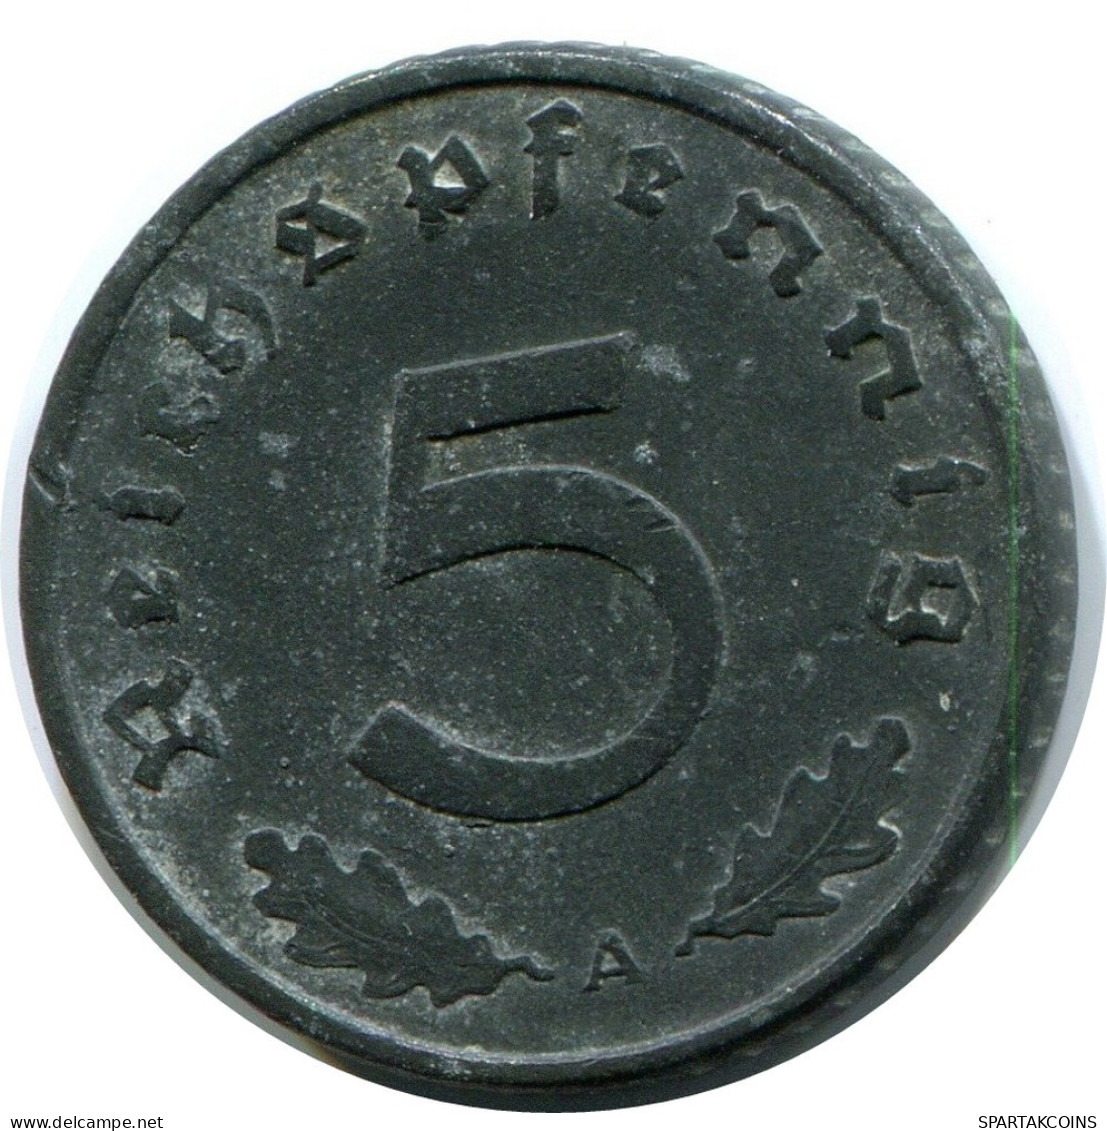 5 REICHSPFENNIG 1941 A GERMANY Coin #AX564.U.A - 5 Reichspfennig